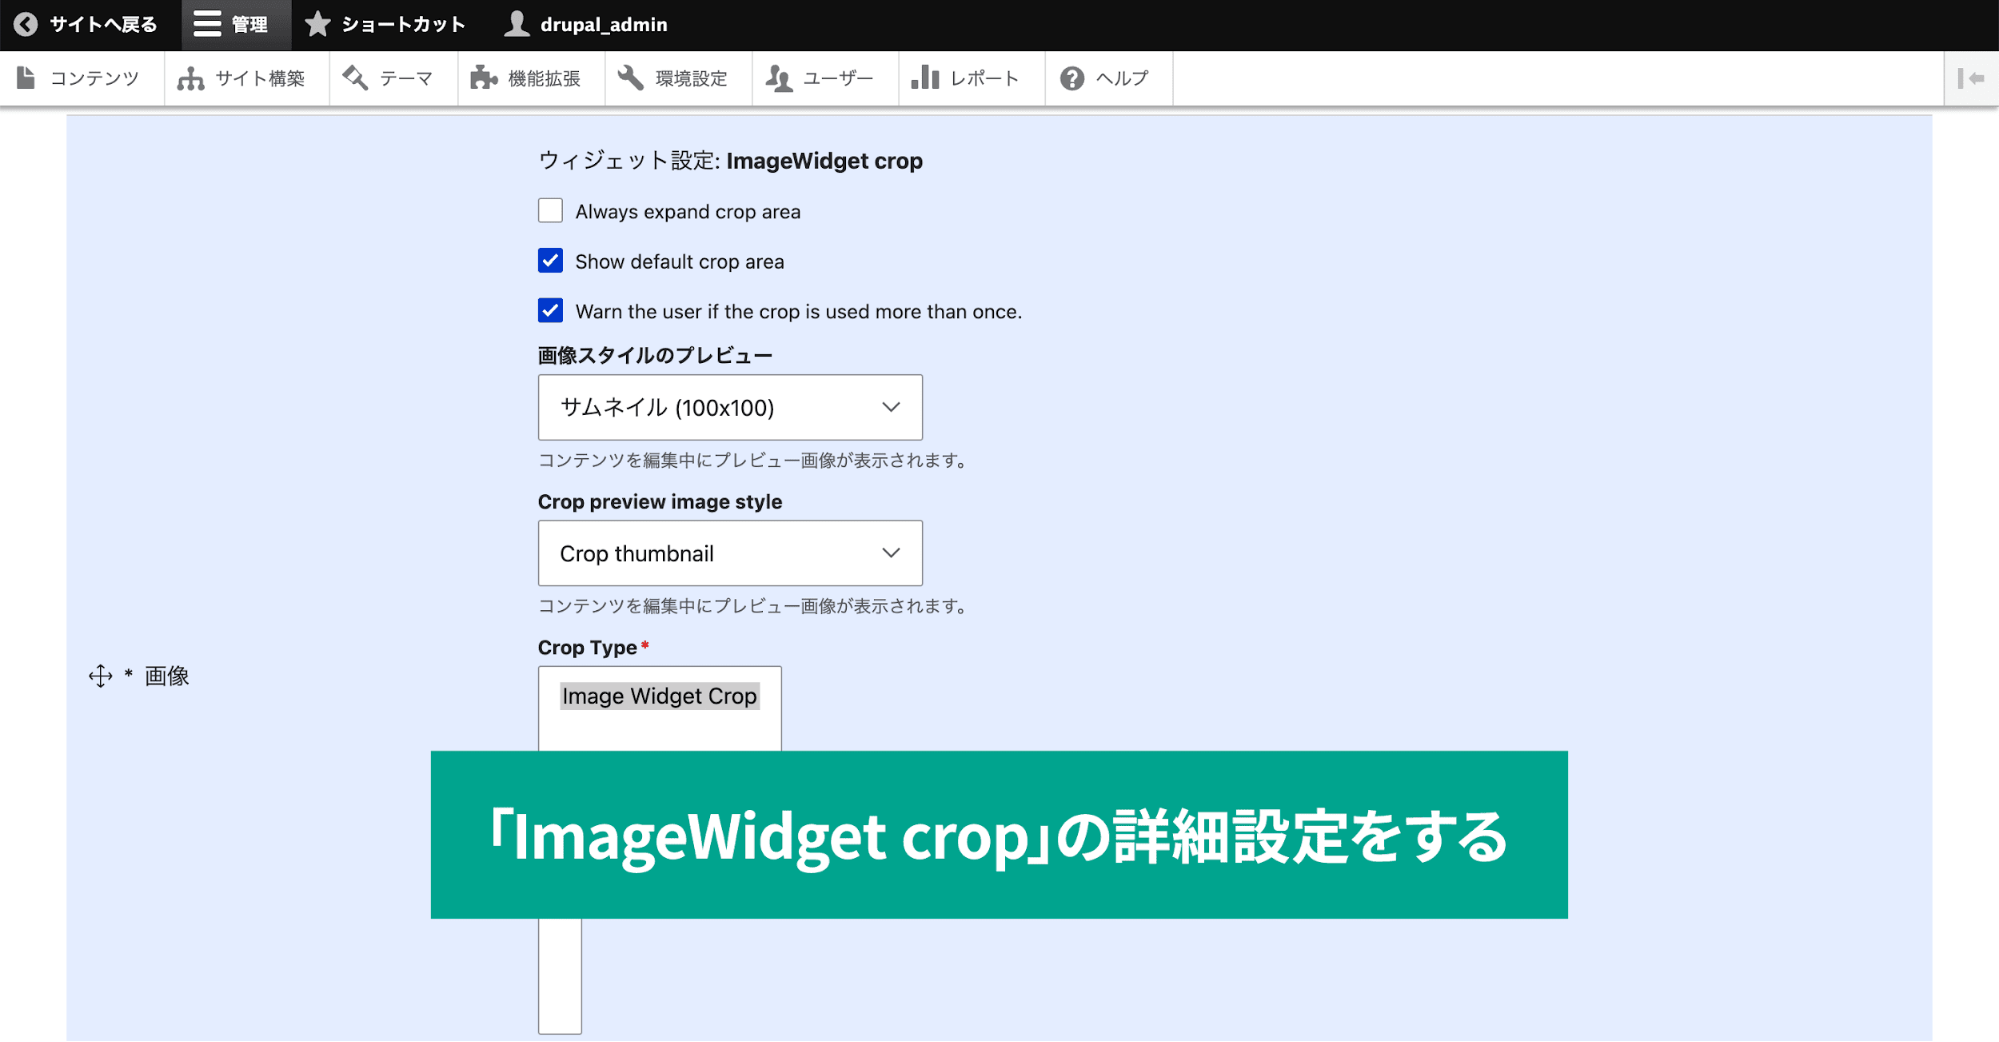 スクリーンショット「ImageWidget cropの詳細設定をする」